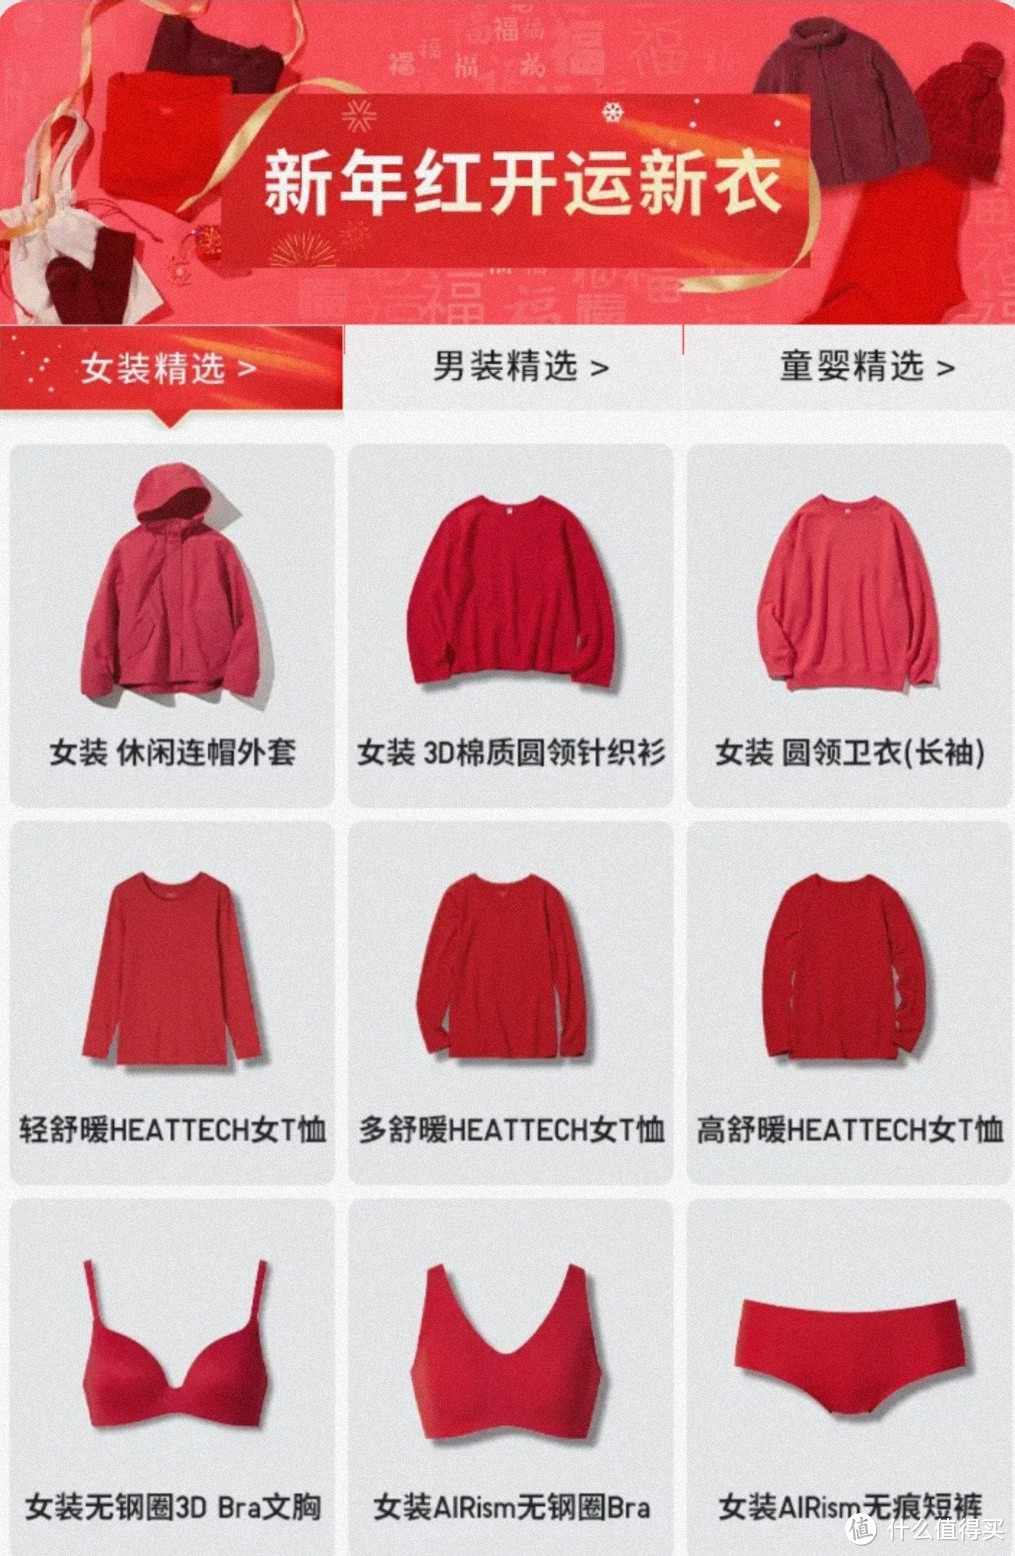 新年红开运新衣，帮自己挑件鸿运当头的优衣库衣服吧！